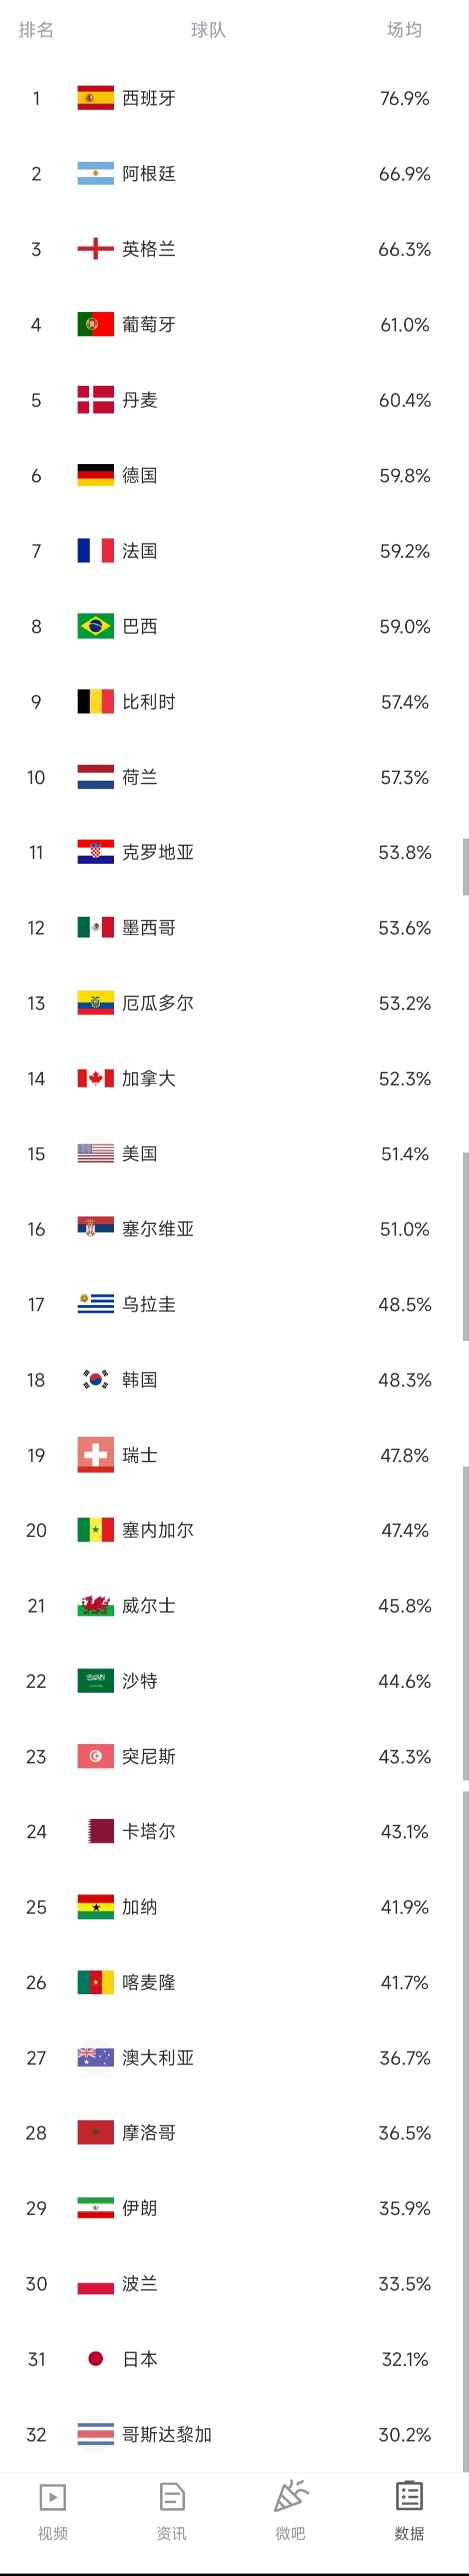 世界杯小组赛控球率排行:西班牙76.9%断层领跑,日本32.1%倒二